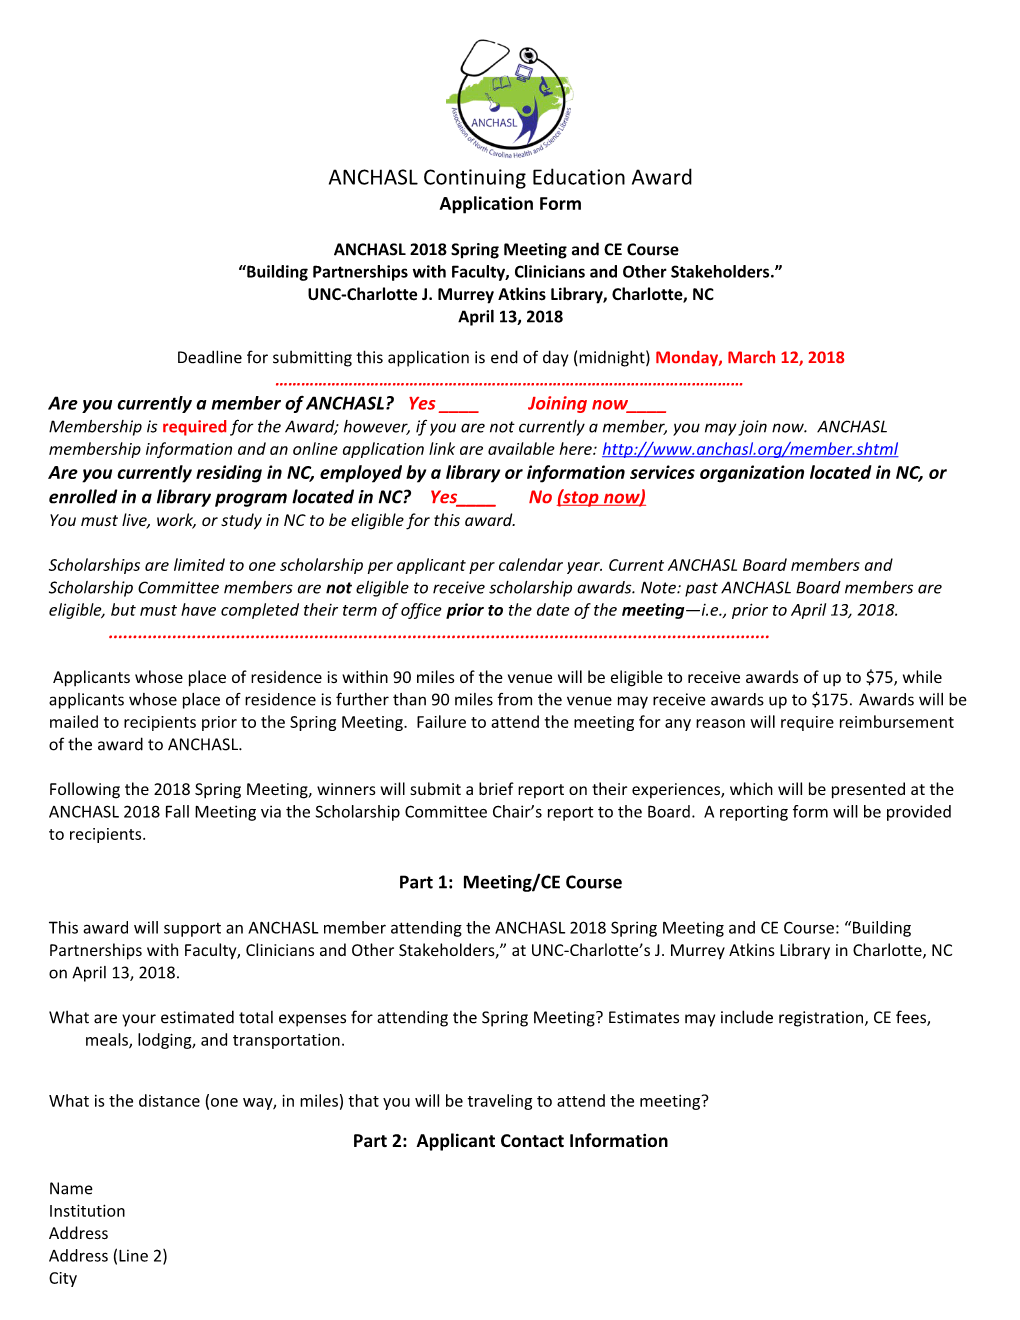 ANCHASL Continuing Education Award